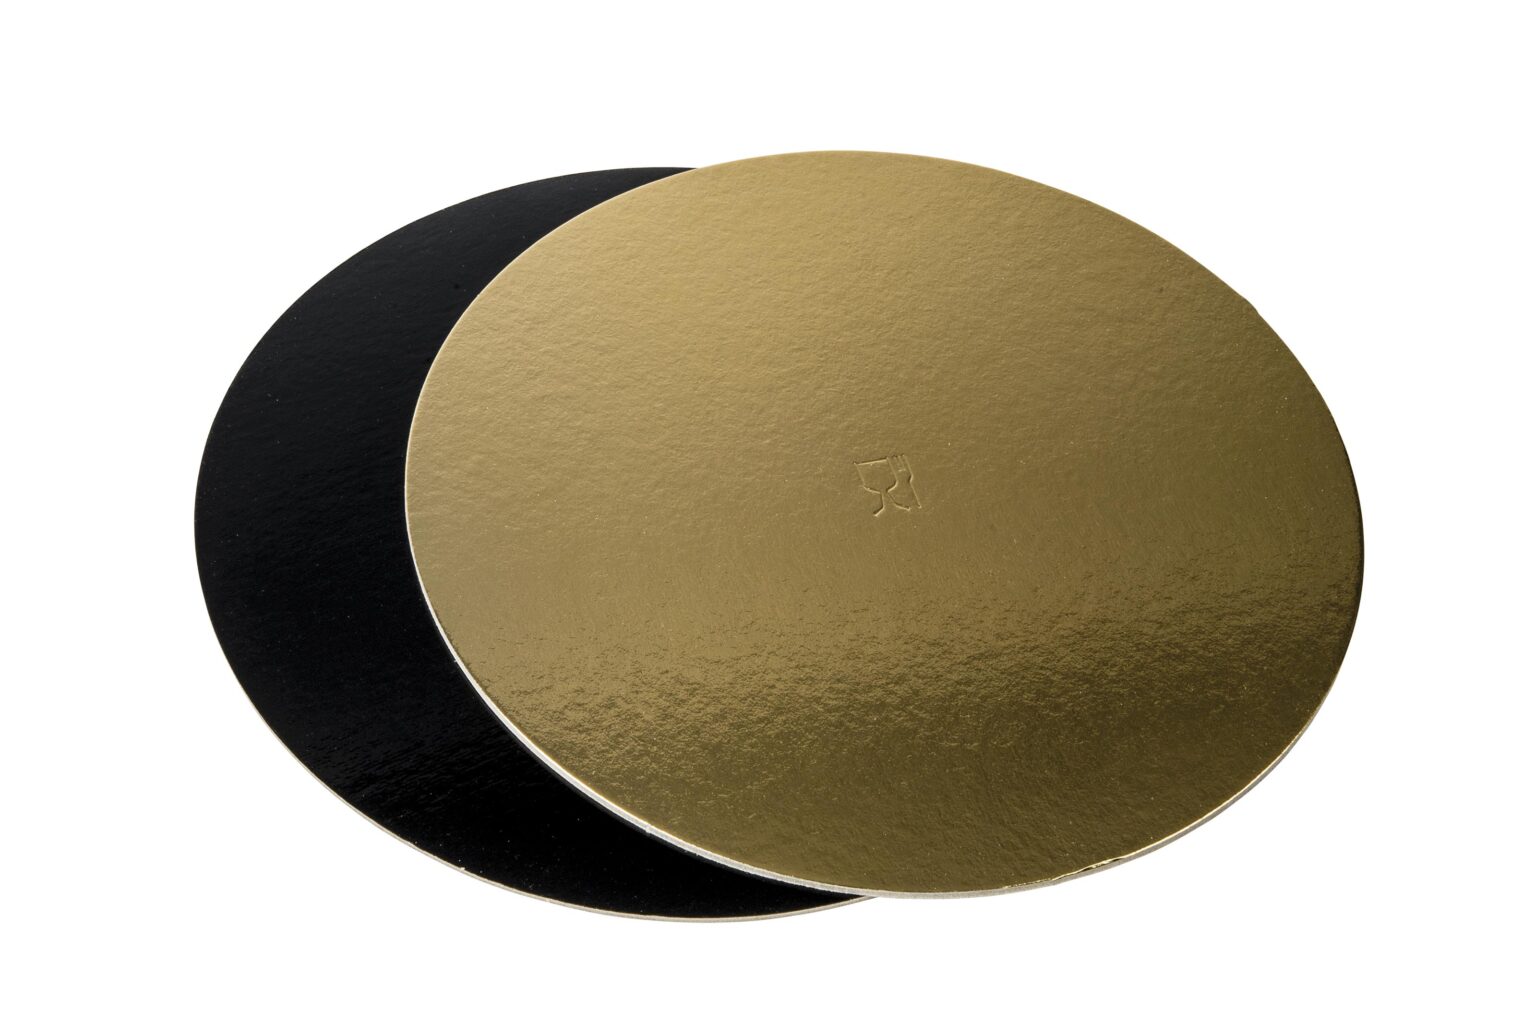 Discuri groase auriu/negru - Discuri groase auriu/negru 2400 gr OE42cm -10 buc/set